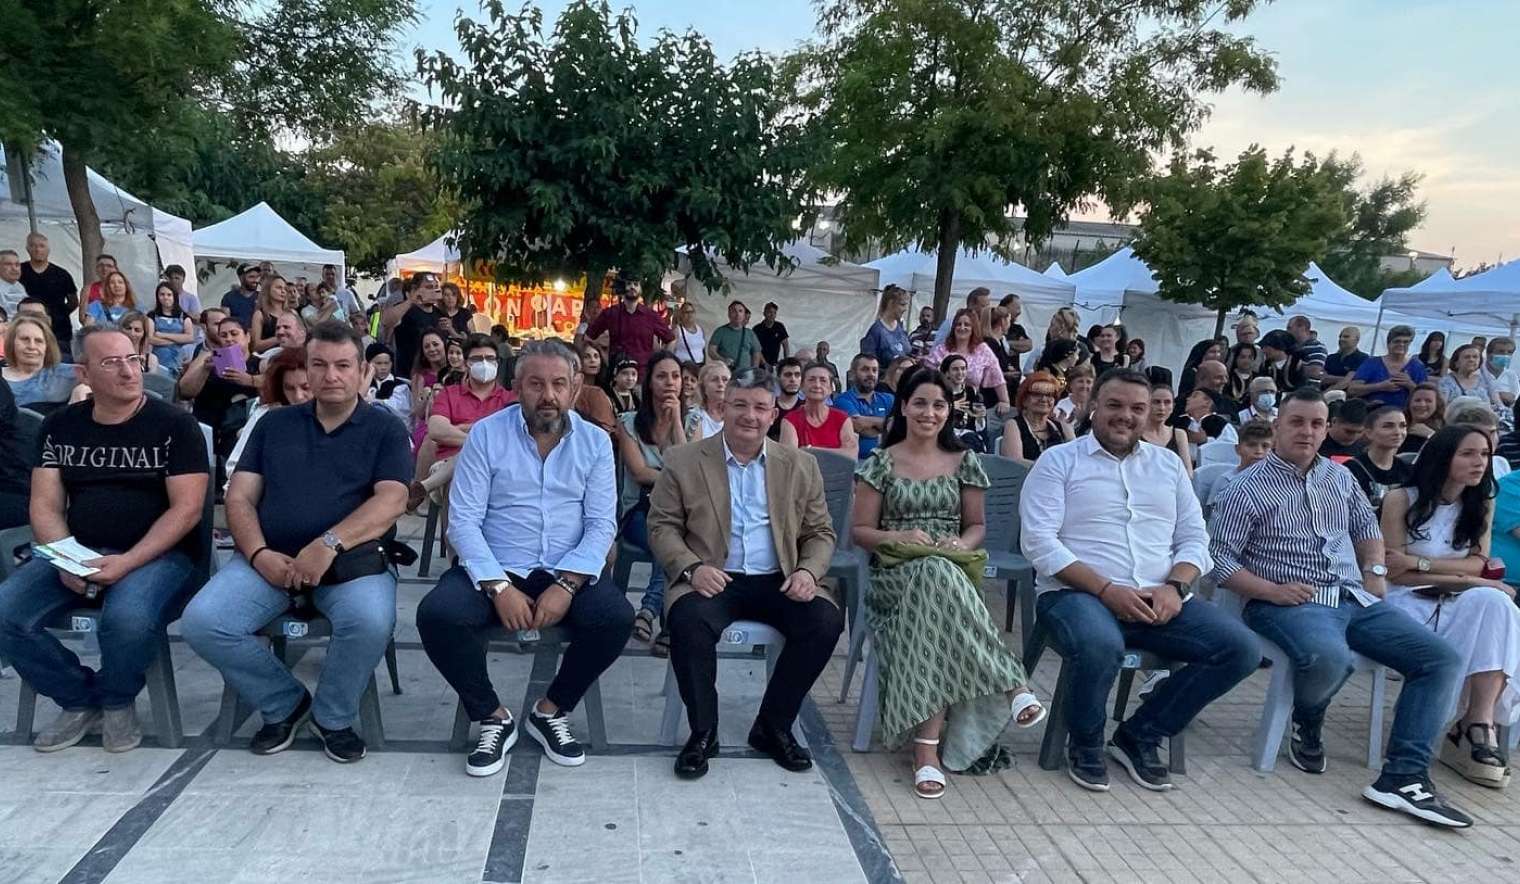 Ξεκίνησε το 1ο Acharnes City Festival. Παραγωγοί και έμποροι απ’ όλη την Ελλάδα